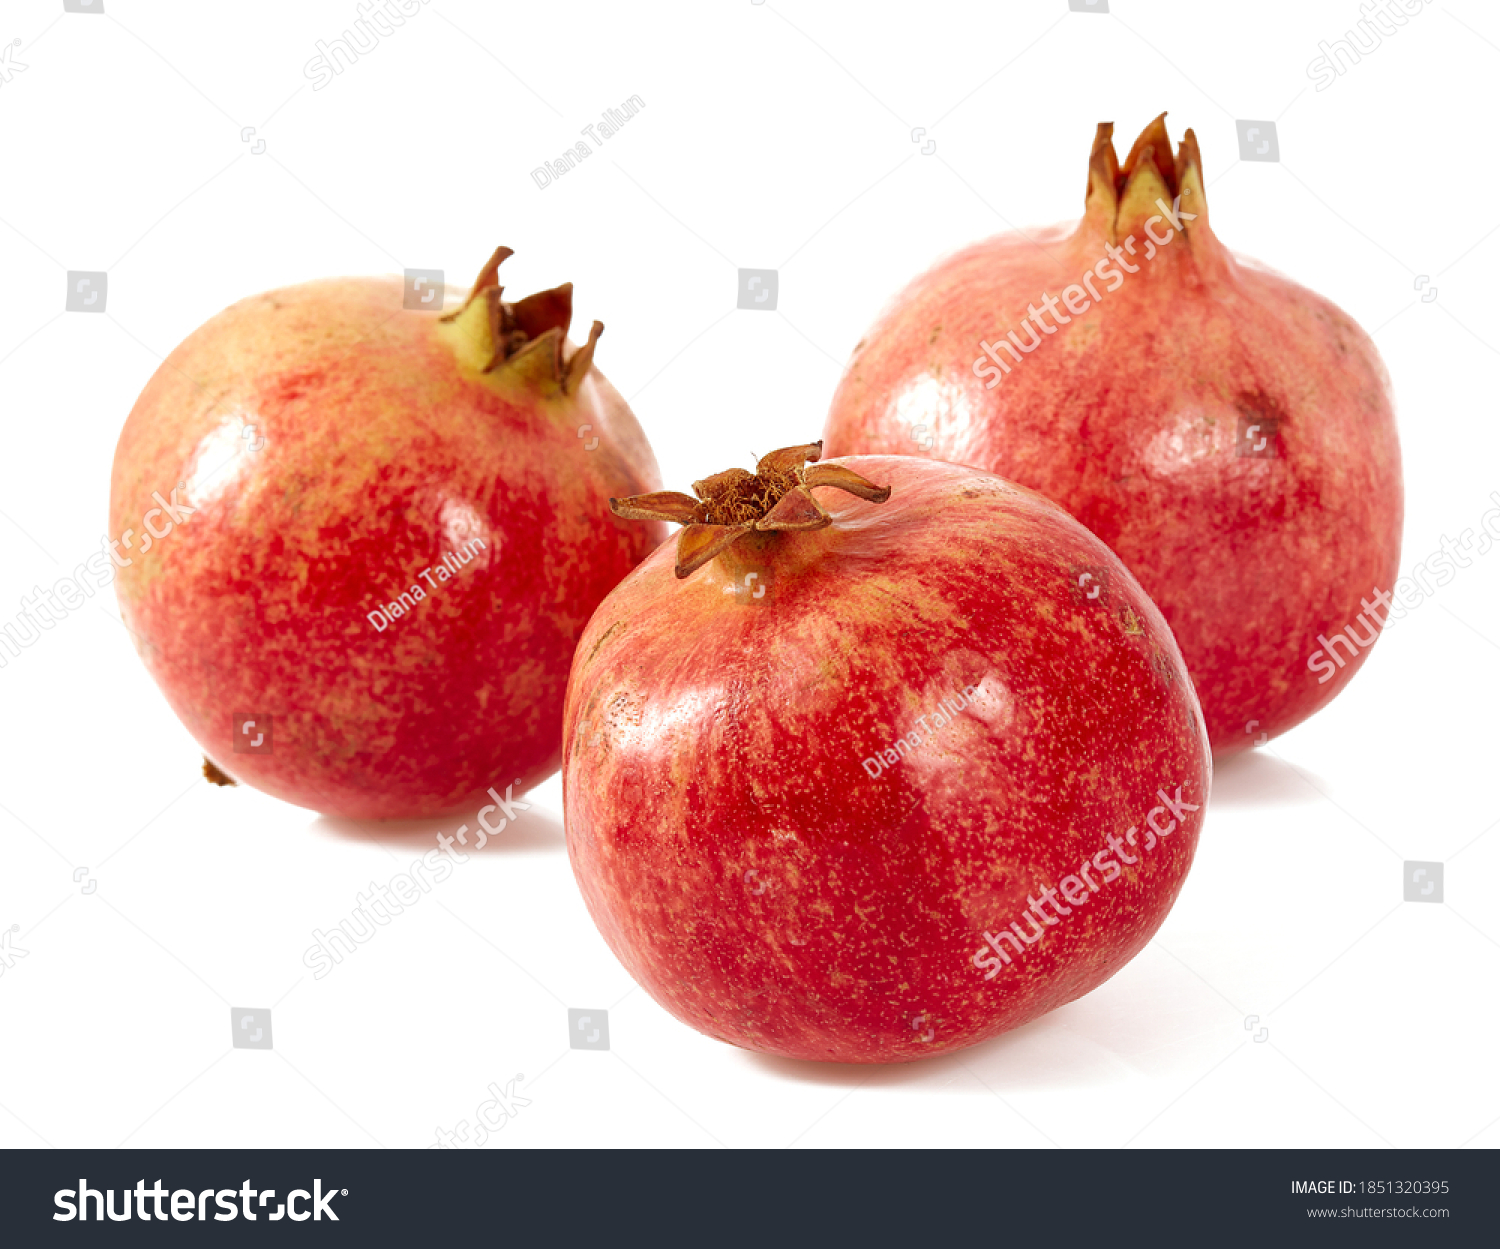 pomegranate isolated on white background #1851320395